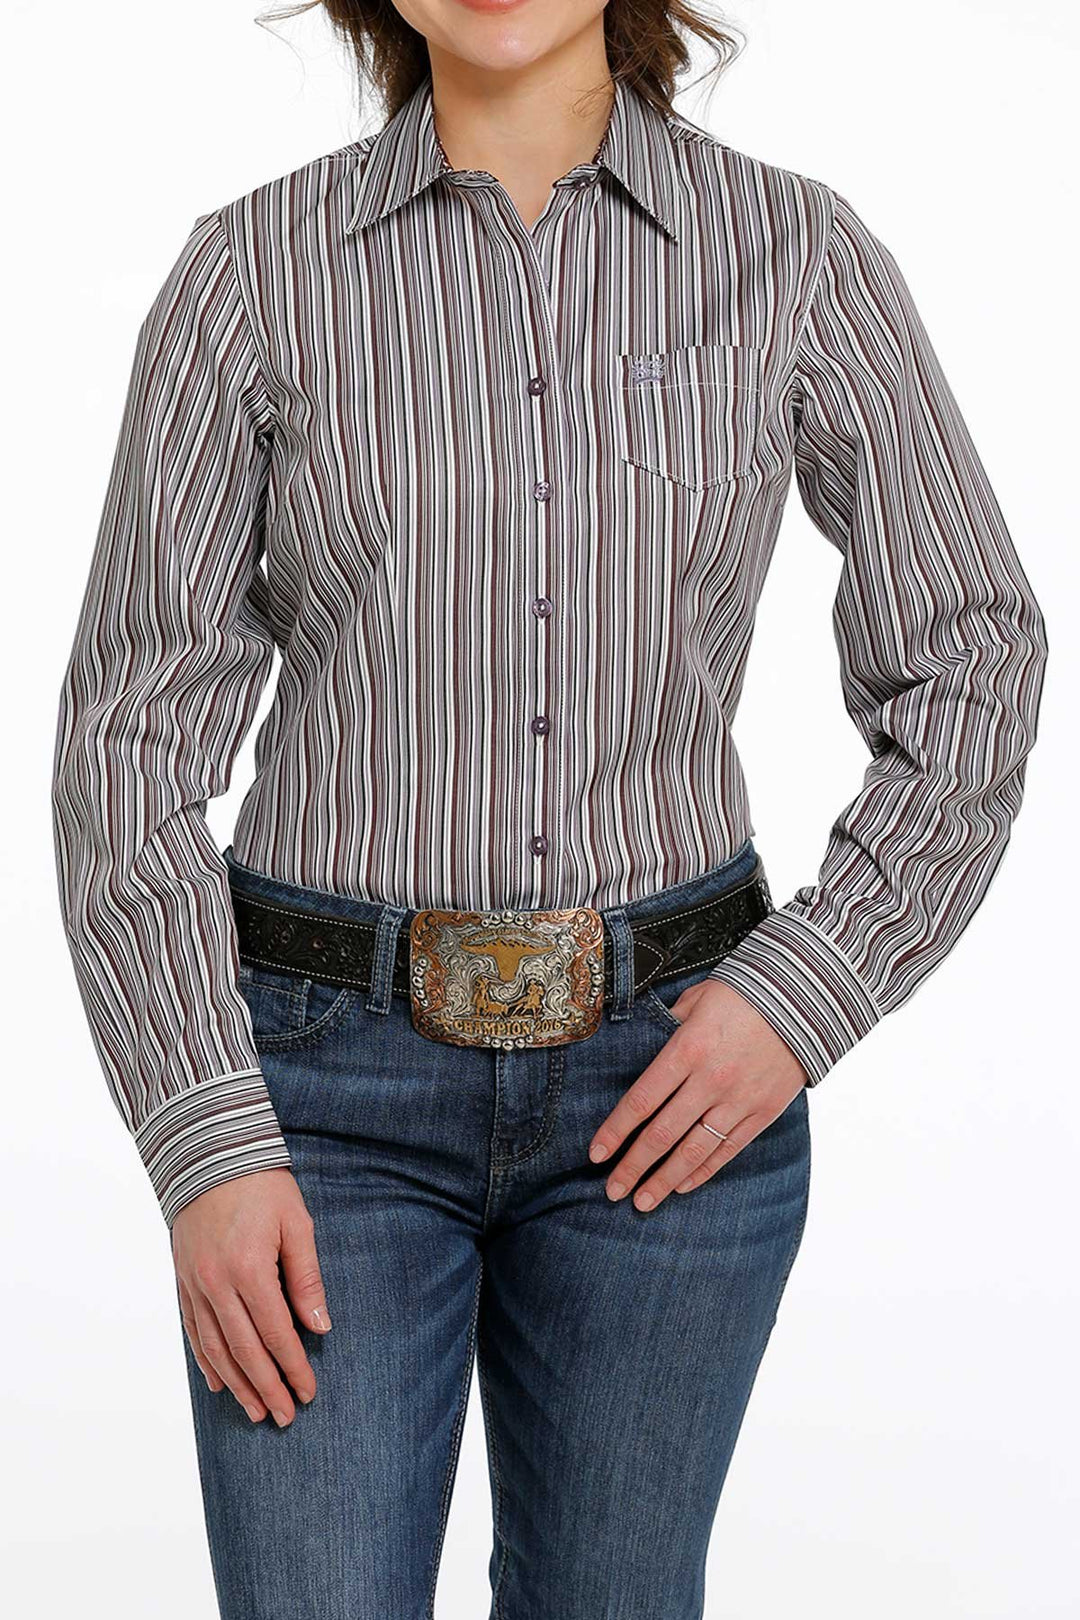 Camicia western da donna con bottoni Cinch in viola/bianco/nero - MSW9164193